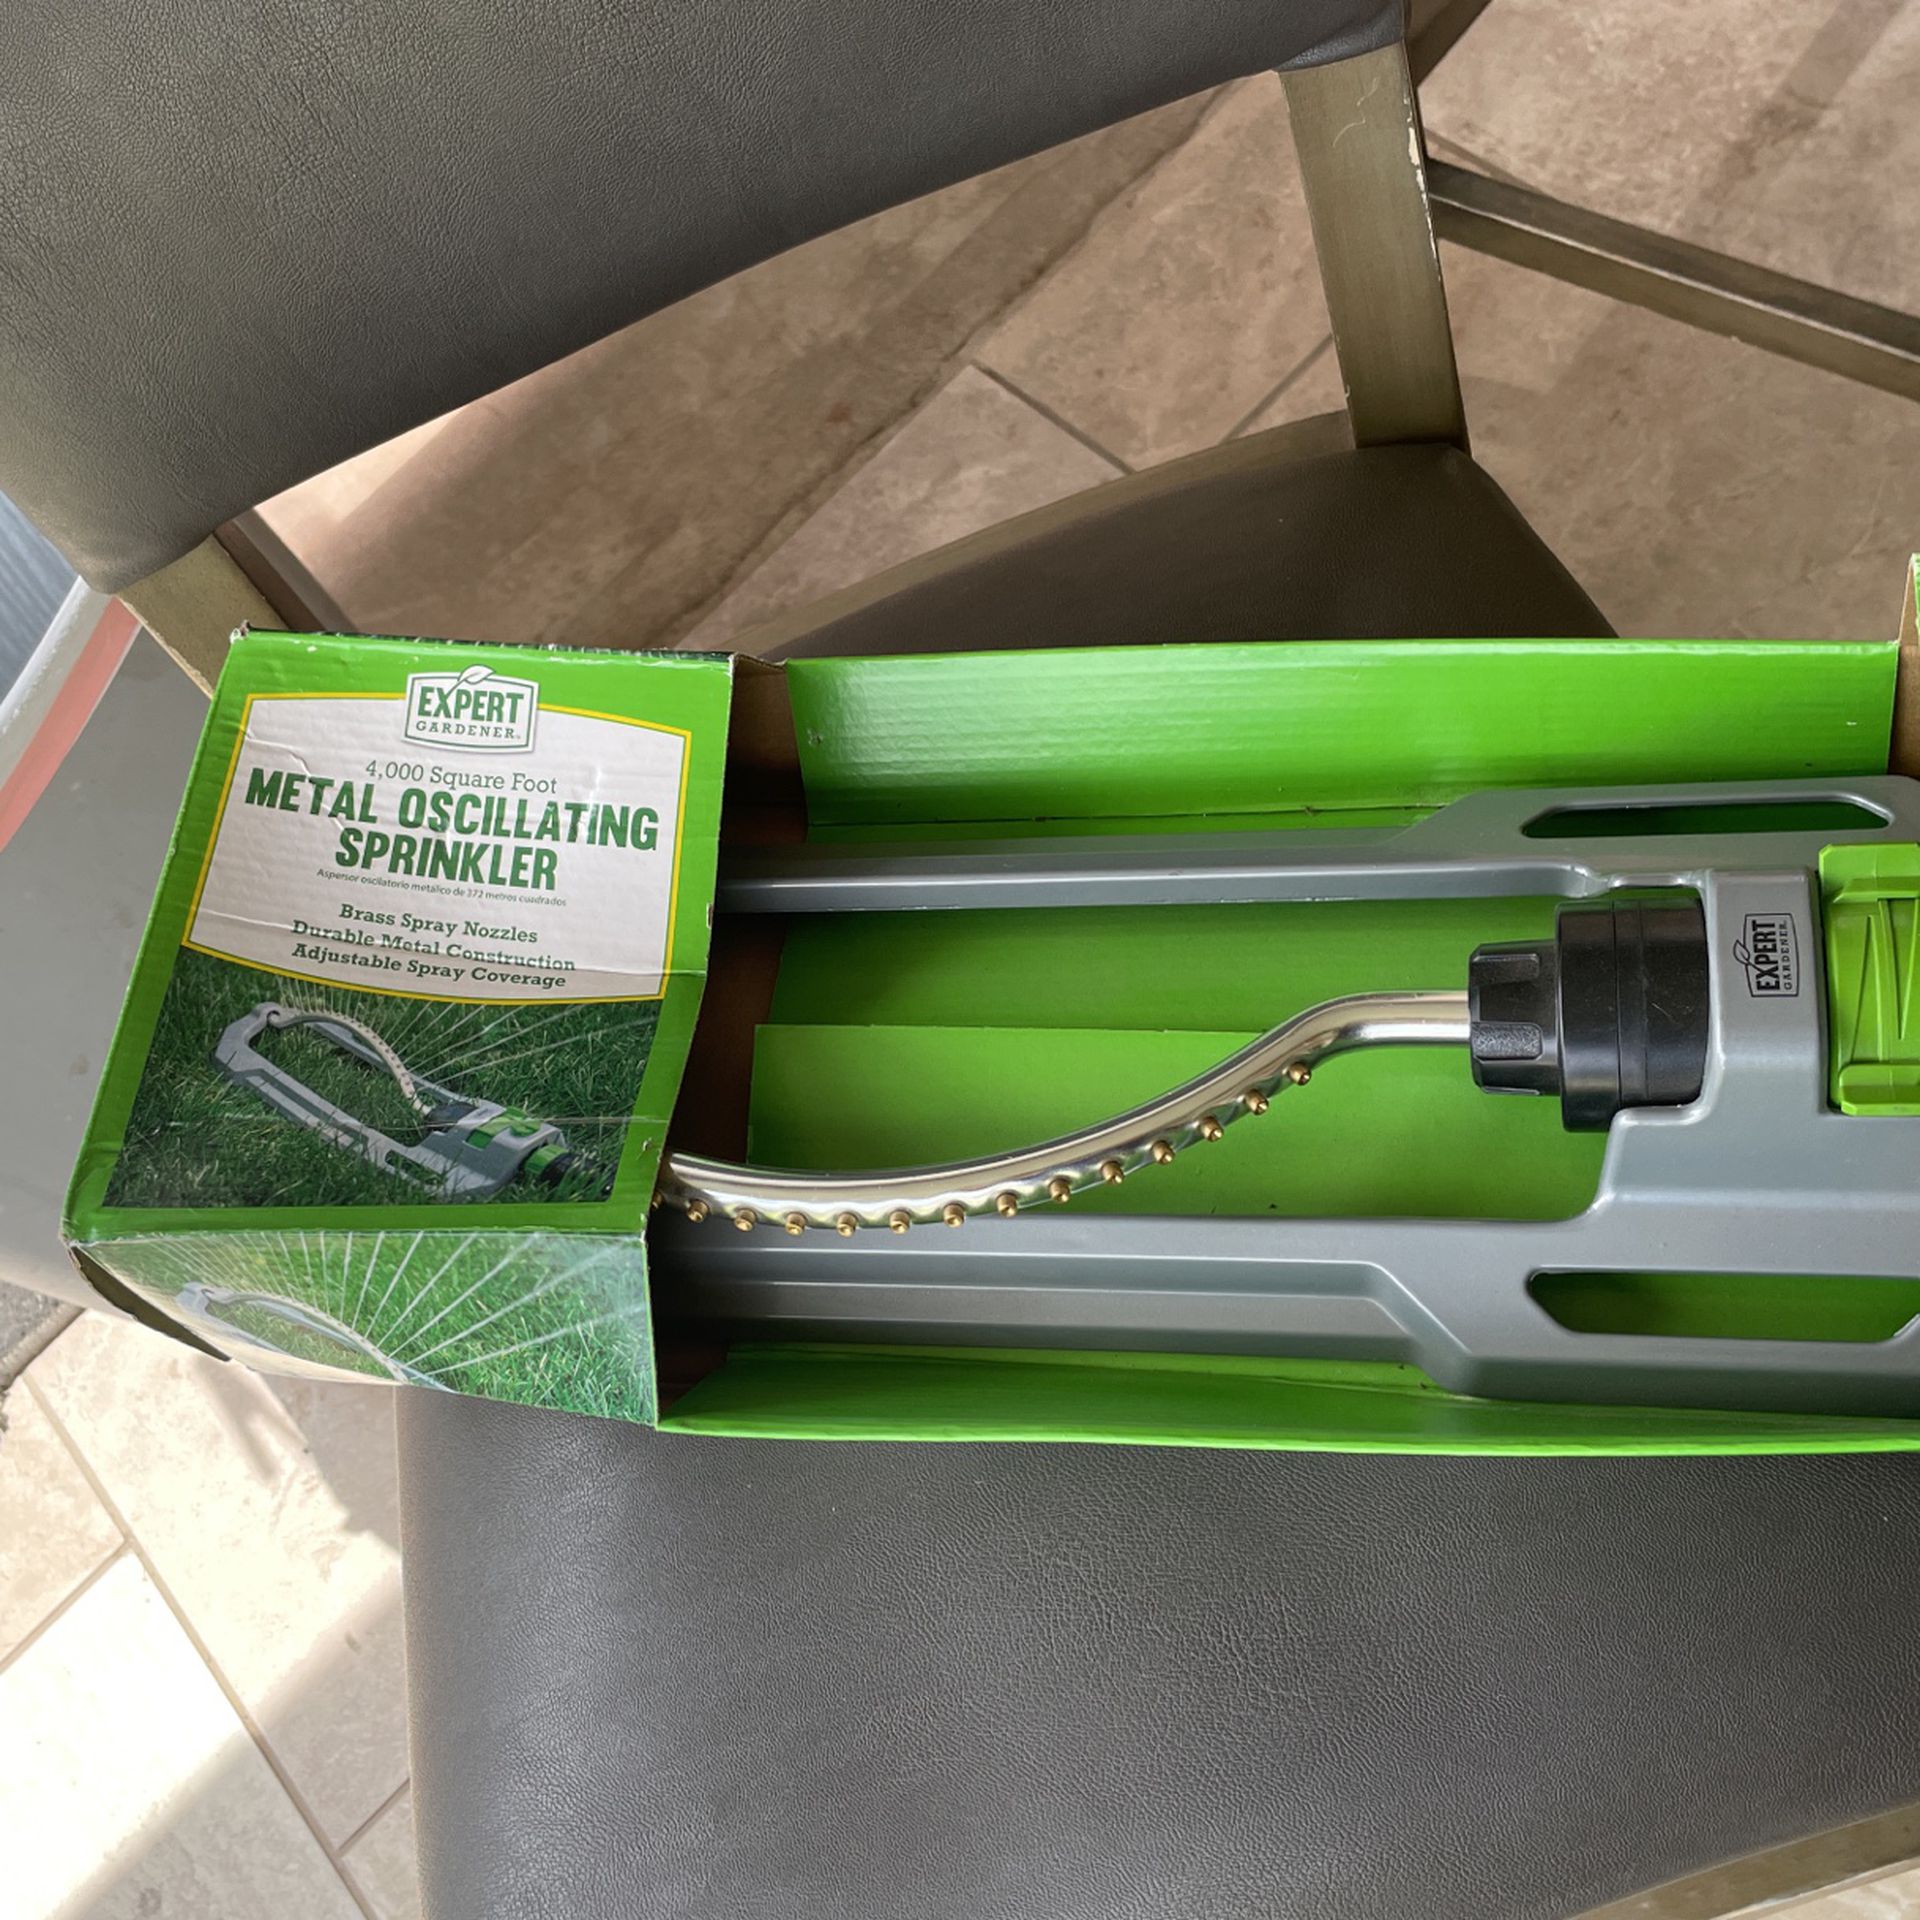 Metal Oscillating Sprinkler, New In The Box